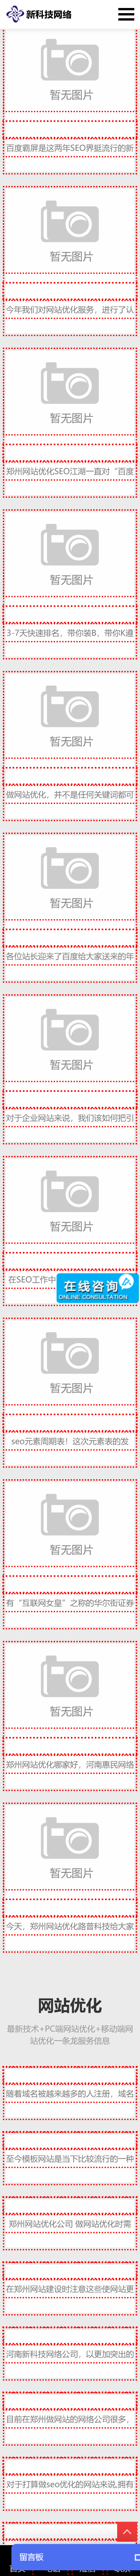 郑州网络公司
设计制作(图2)